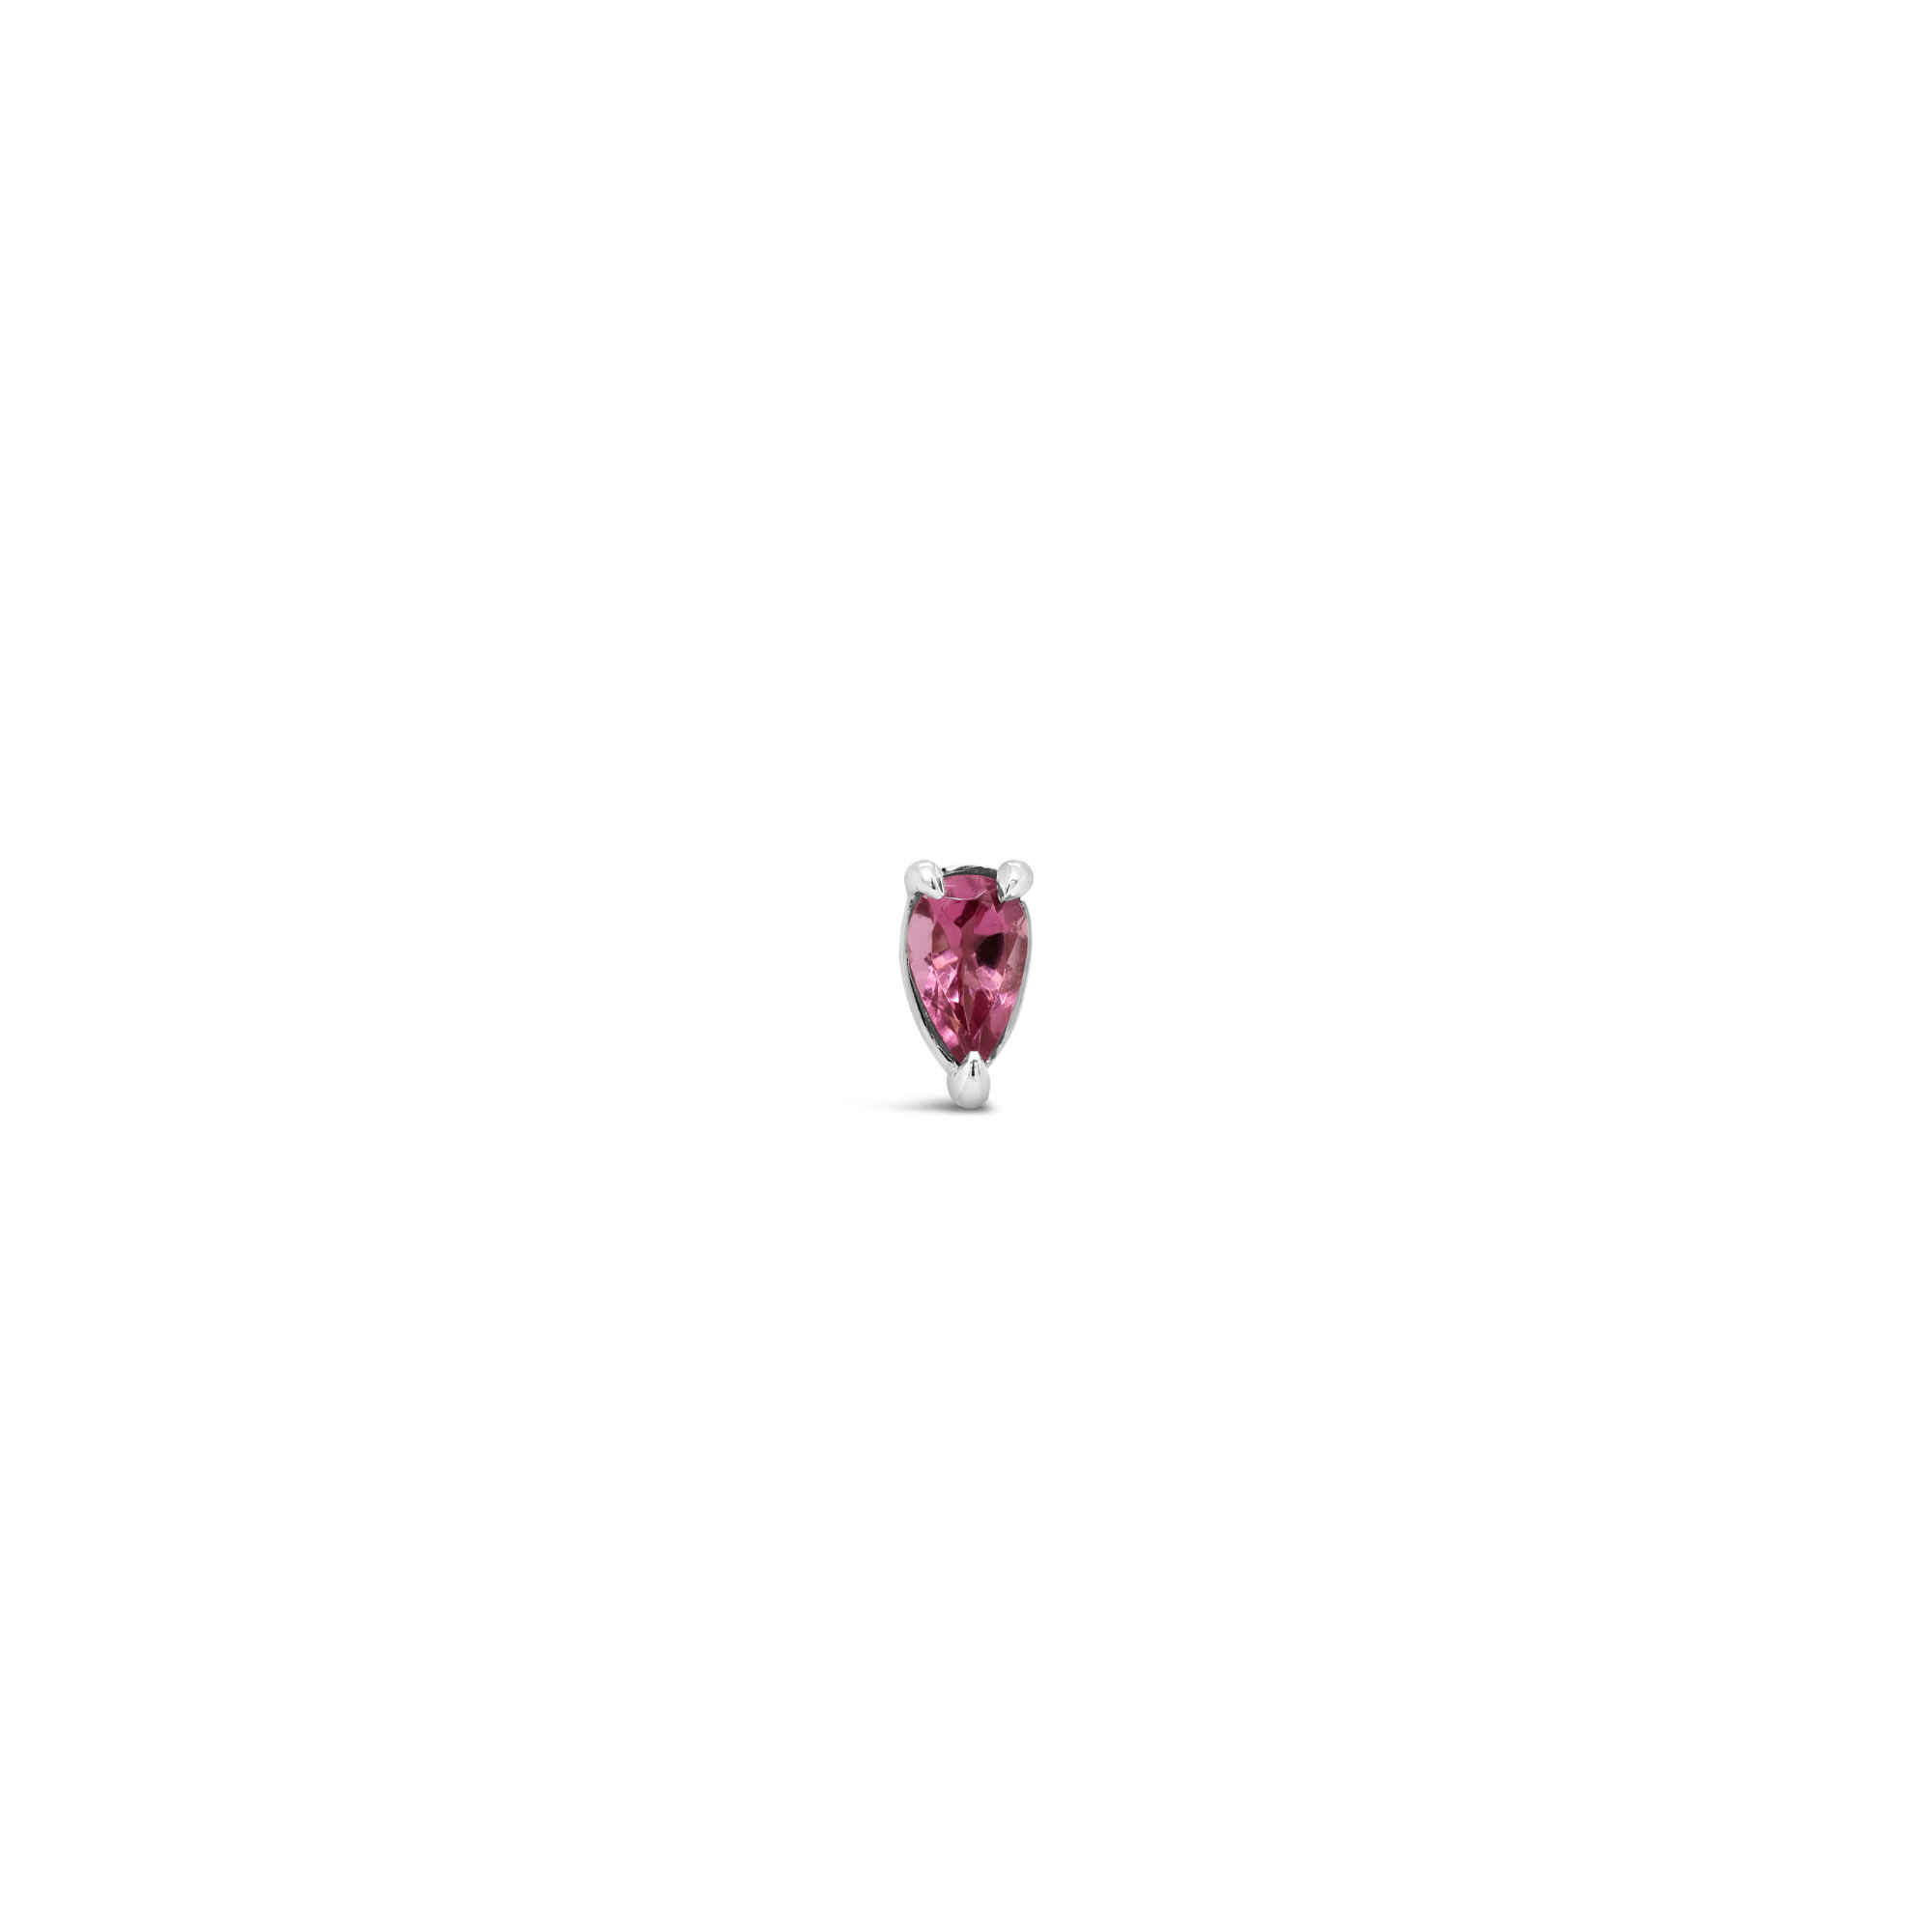 Pear cut pink tourmaline single earring